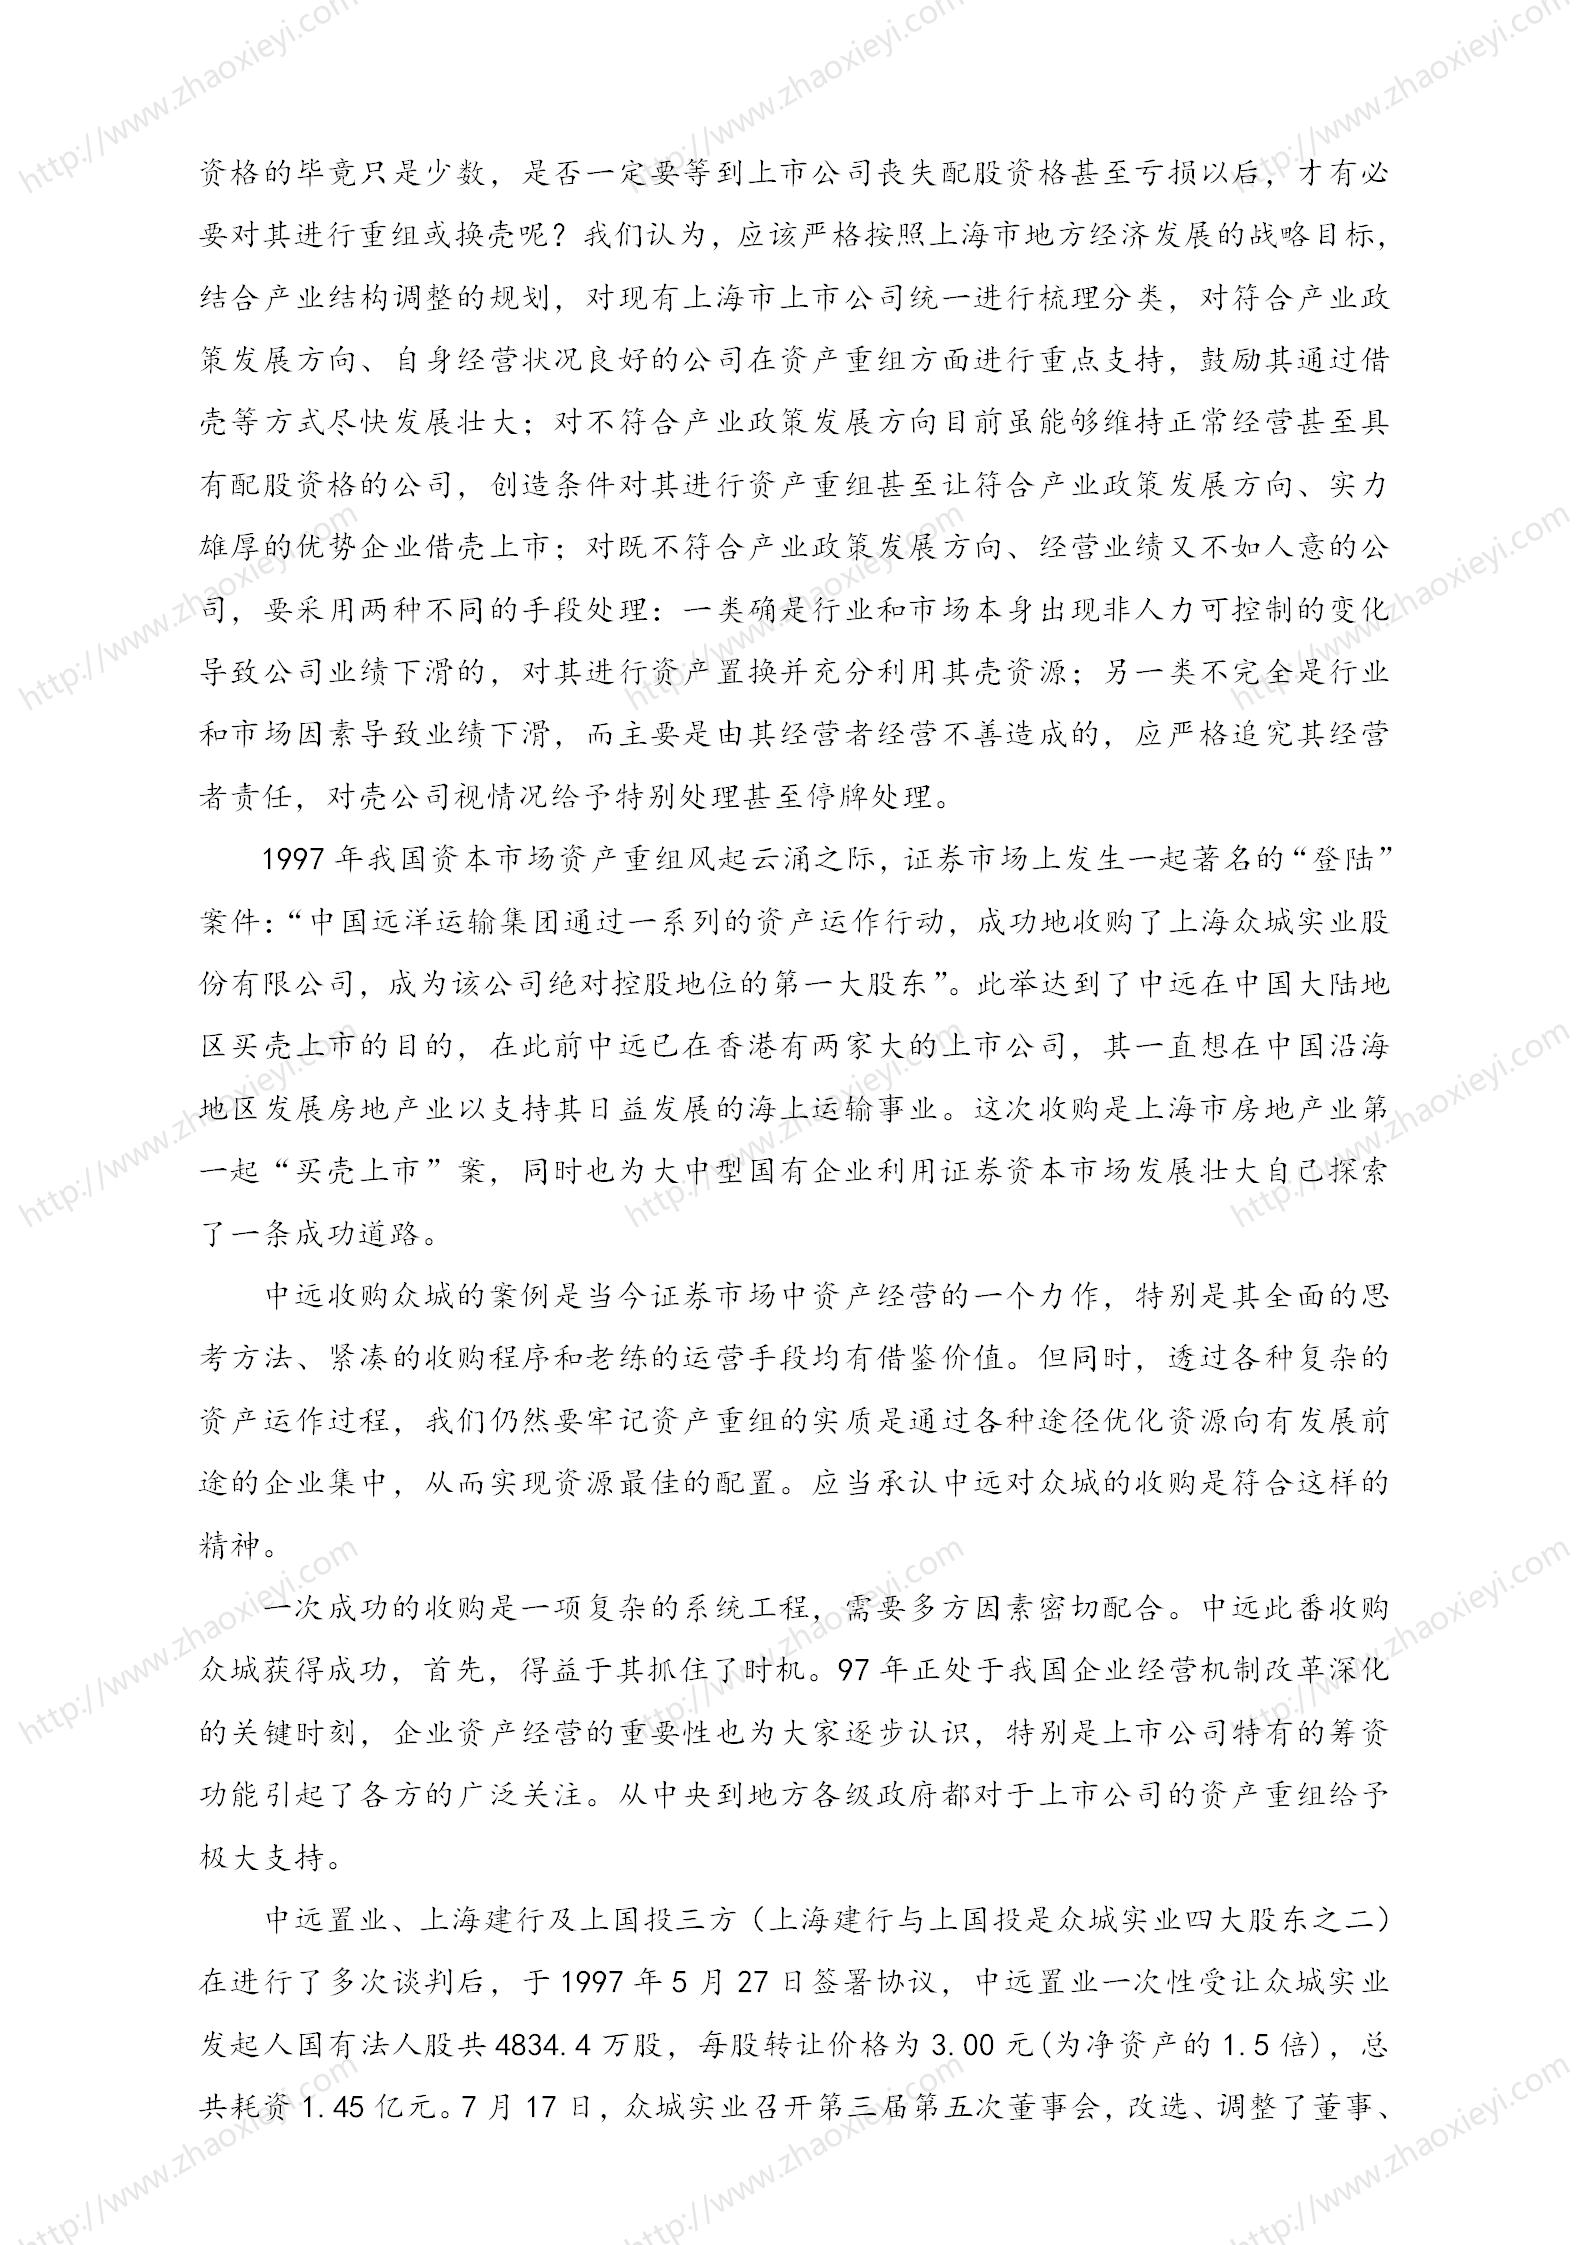 中国企业并购经典案例_114.jpg